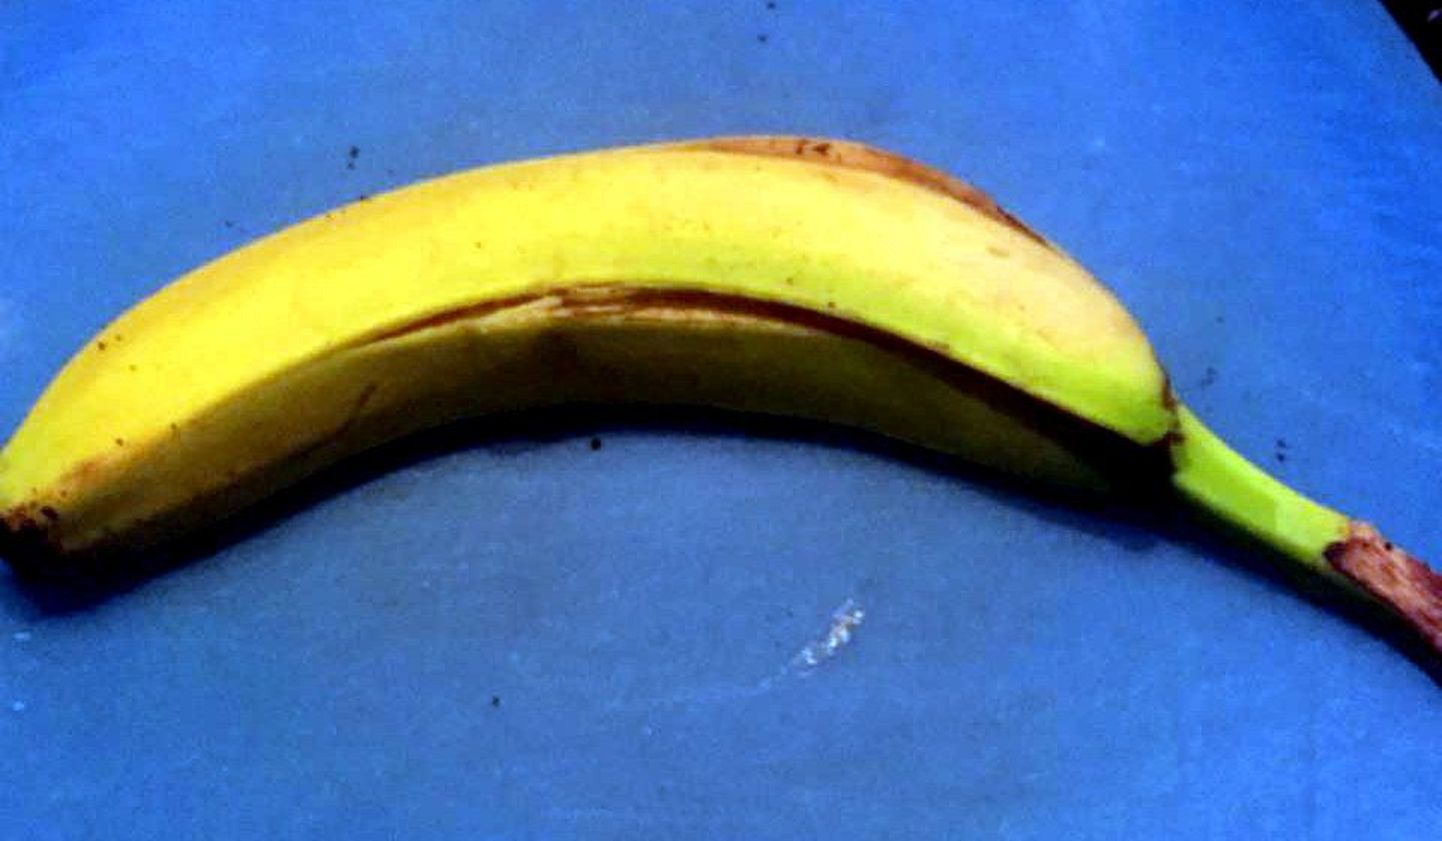 Väljast nägi banaan välja nagu iga teine.